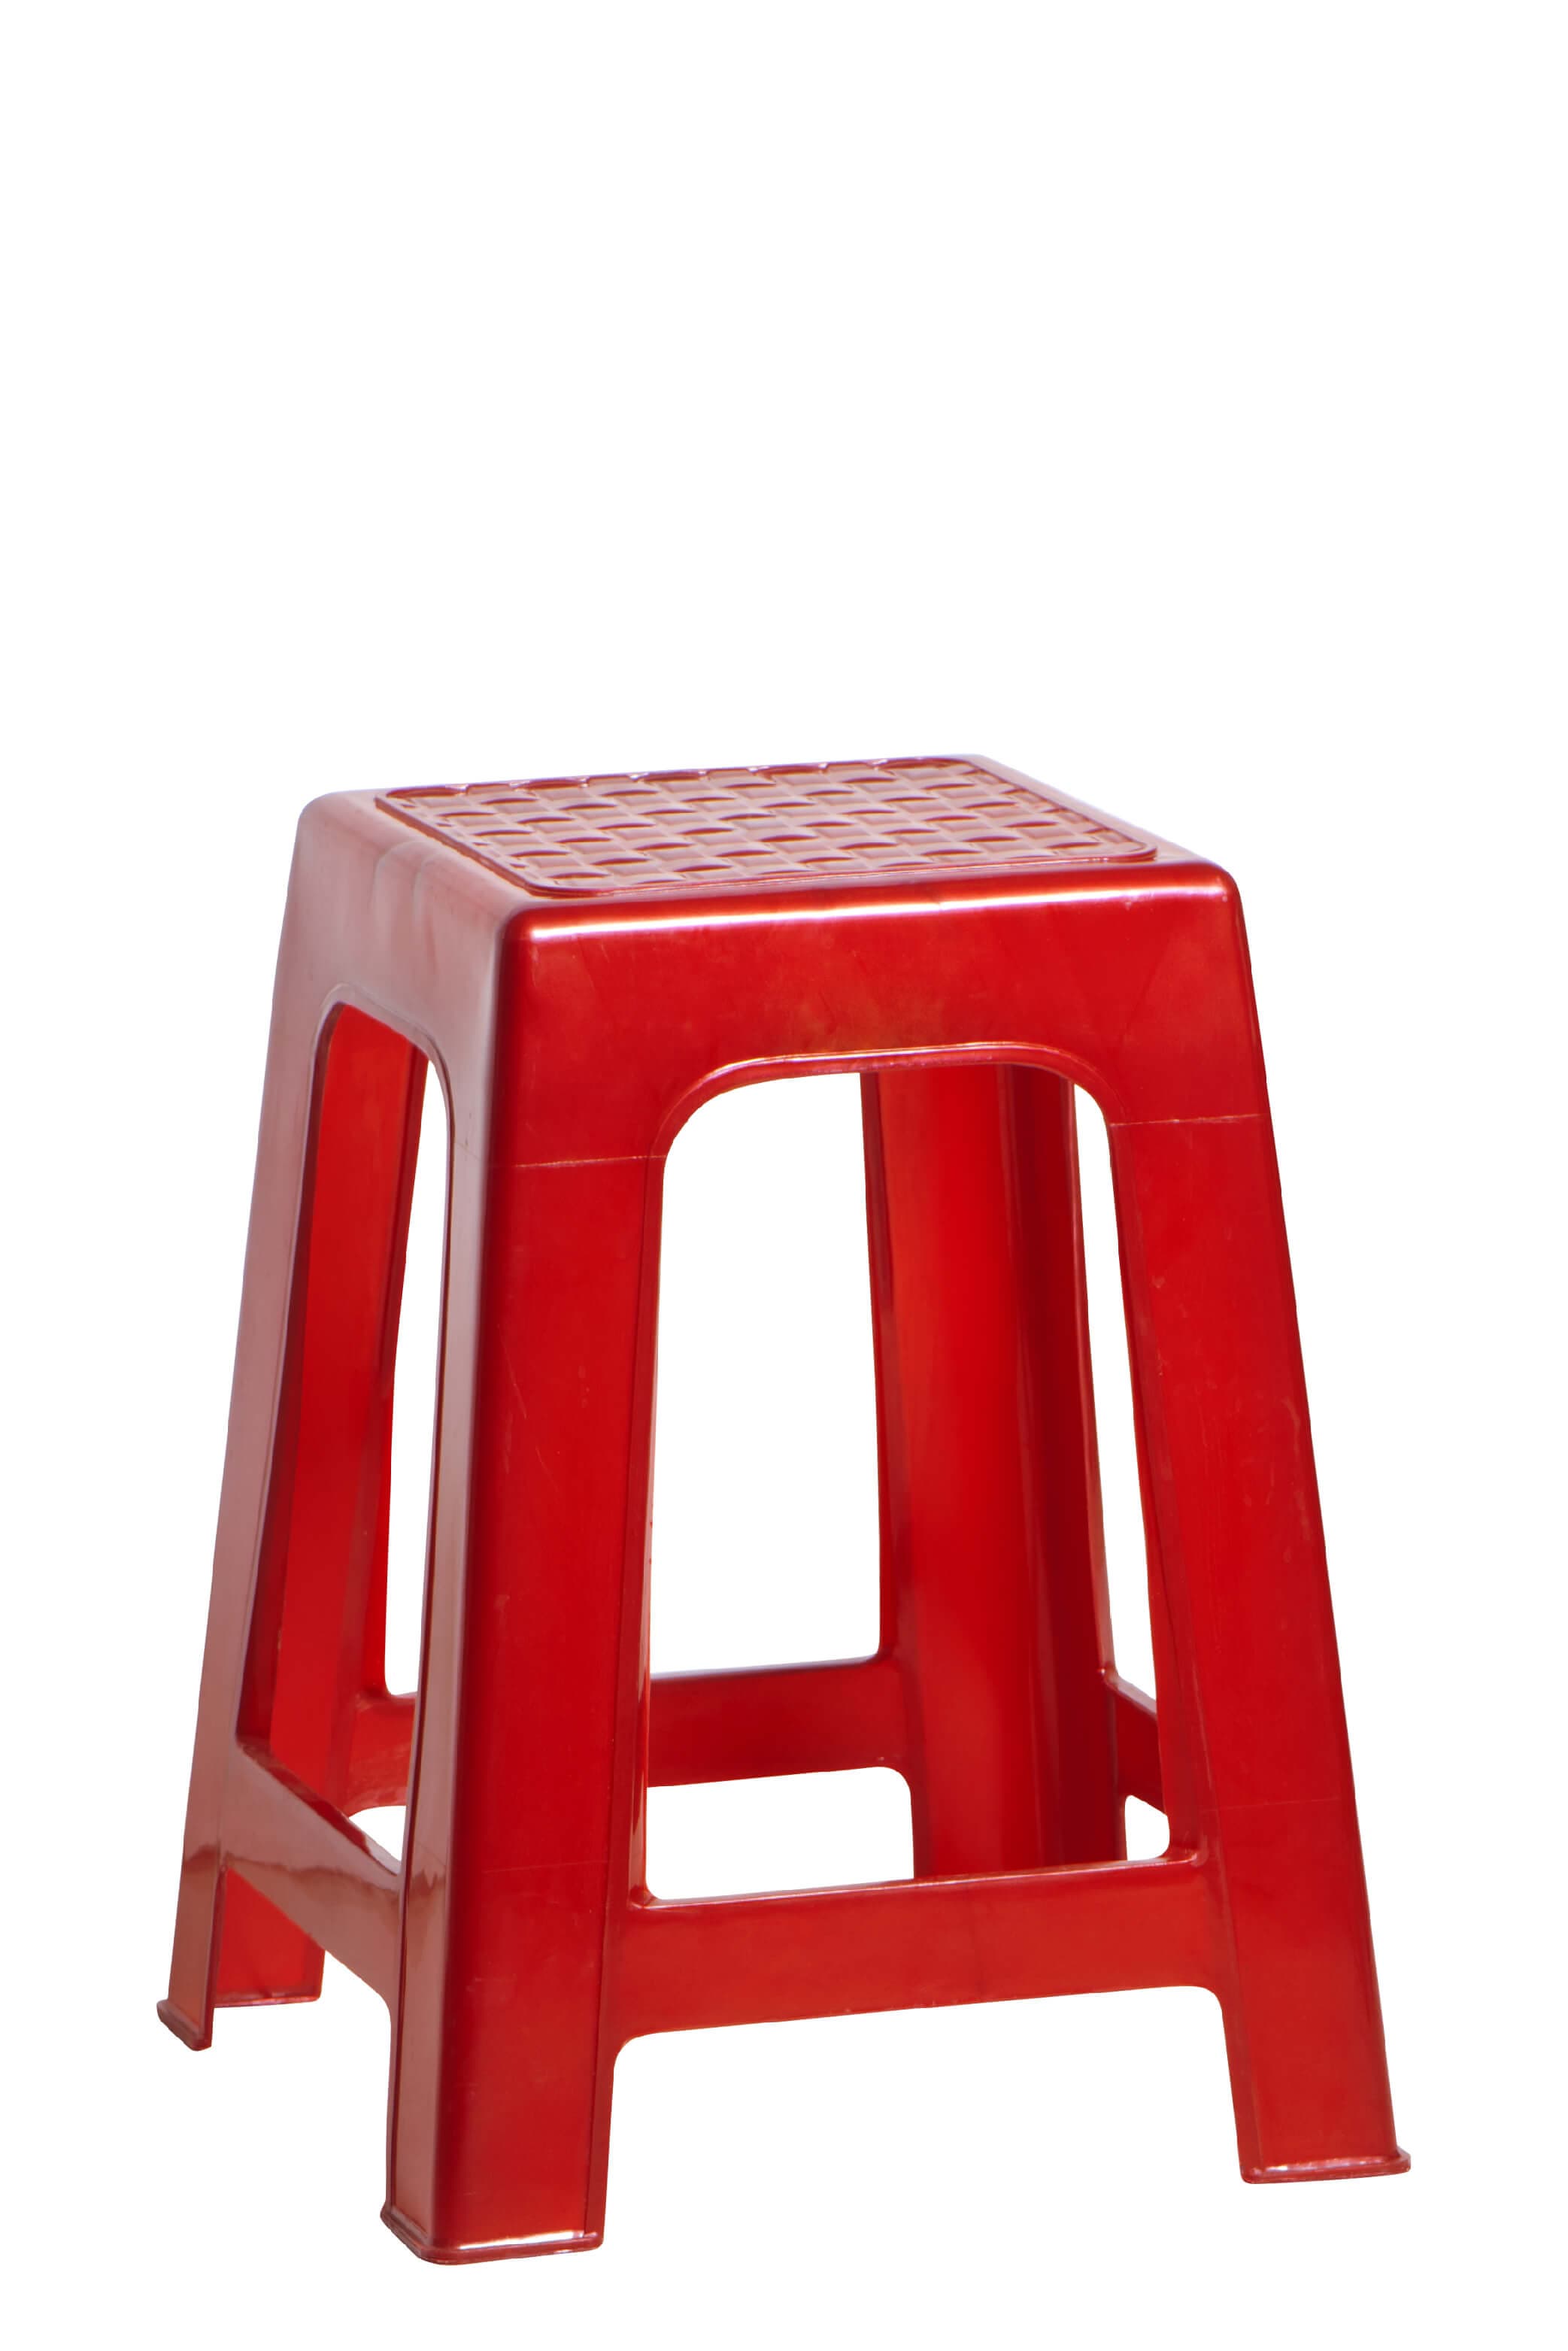 Household _ Plastic Chair _ Net High Stool